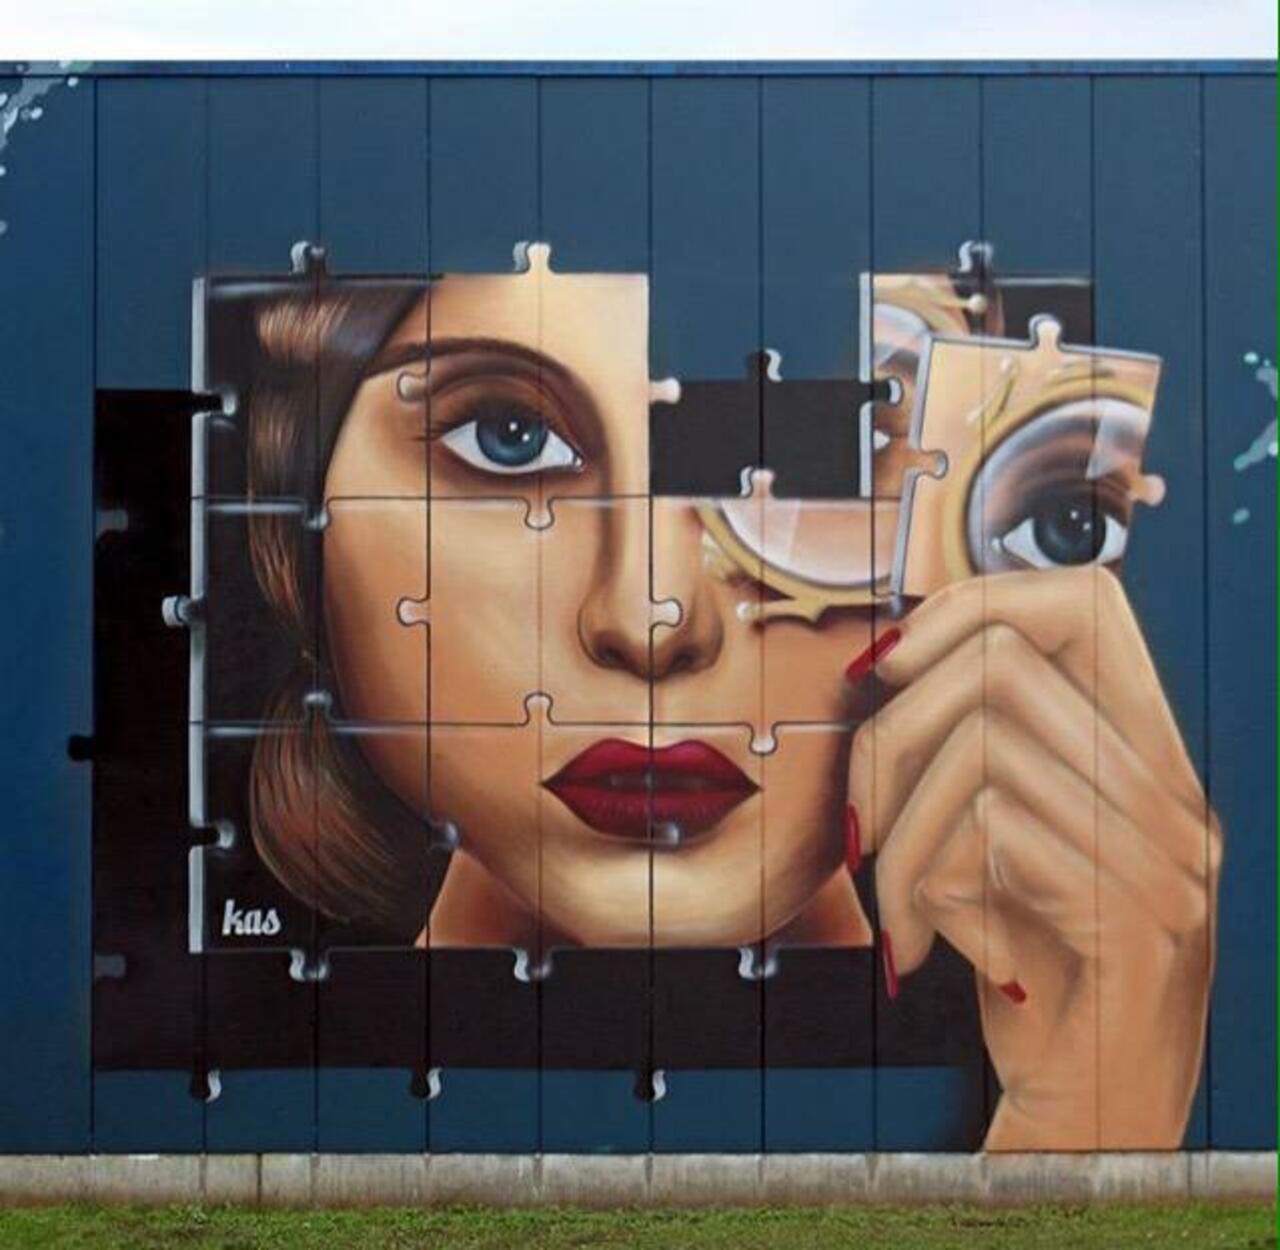 RT belilac "RT belilac "Kas Art's new Street Art "Piece of me" in Aalst Belgium 

#art #graffiti #mural #streetart http://t.co/E6dpcyDyrs""